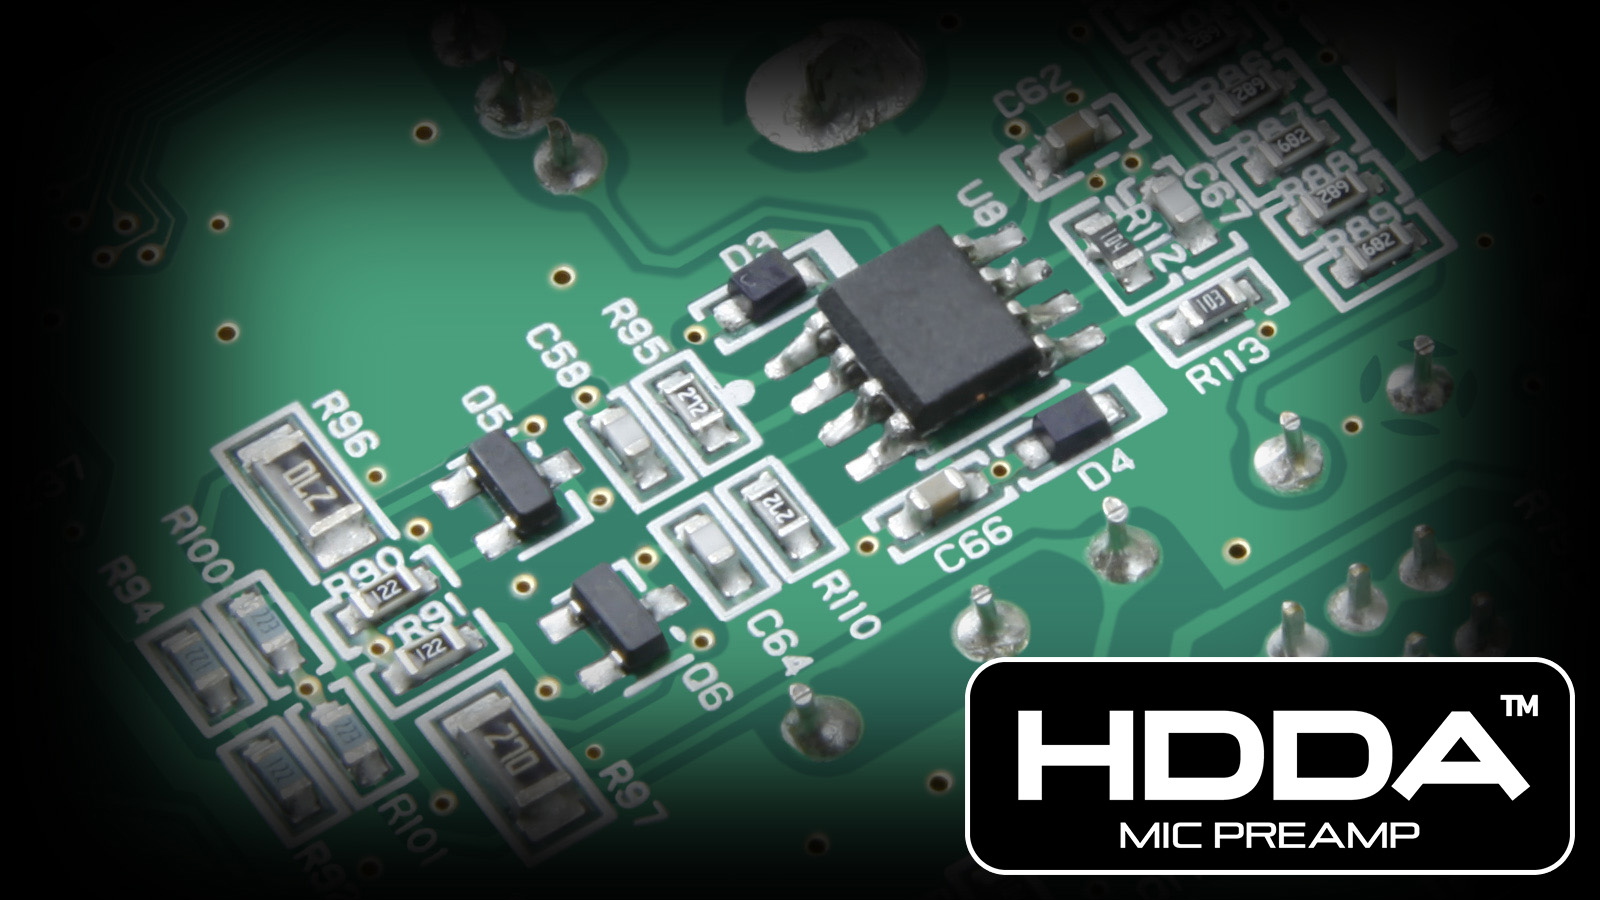 Un preamplificador de micrófono HDDA de alto rendimiento consigue una alta calidad de sonido, bajo nivel de ruido y un amplio rango dinámico